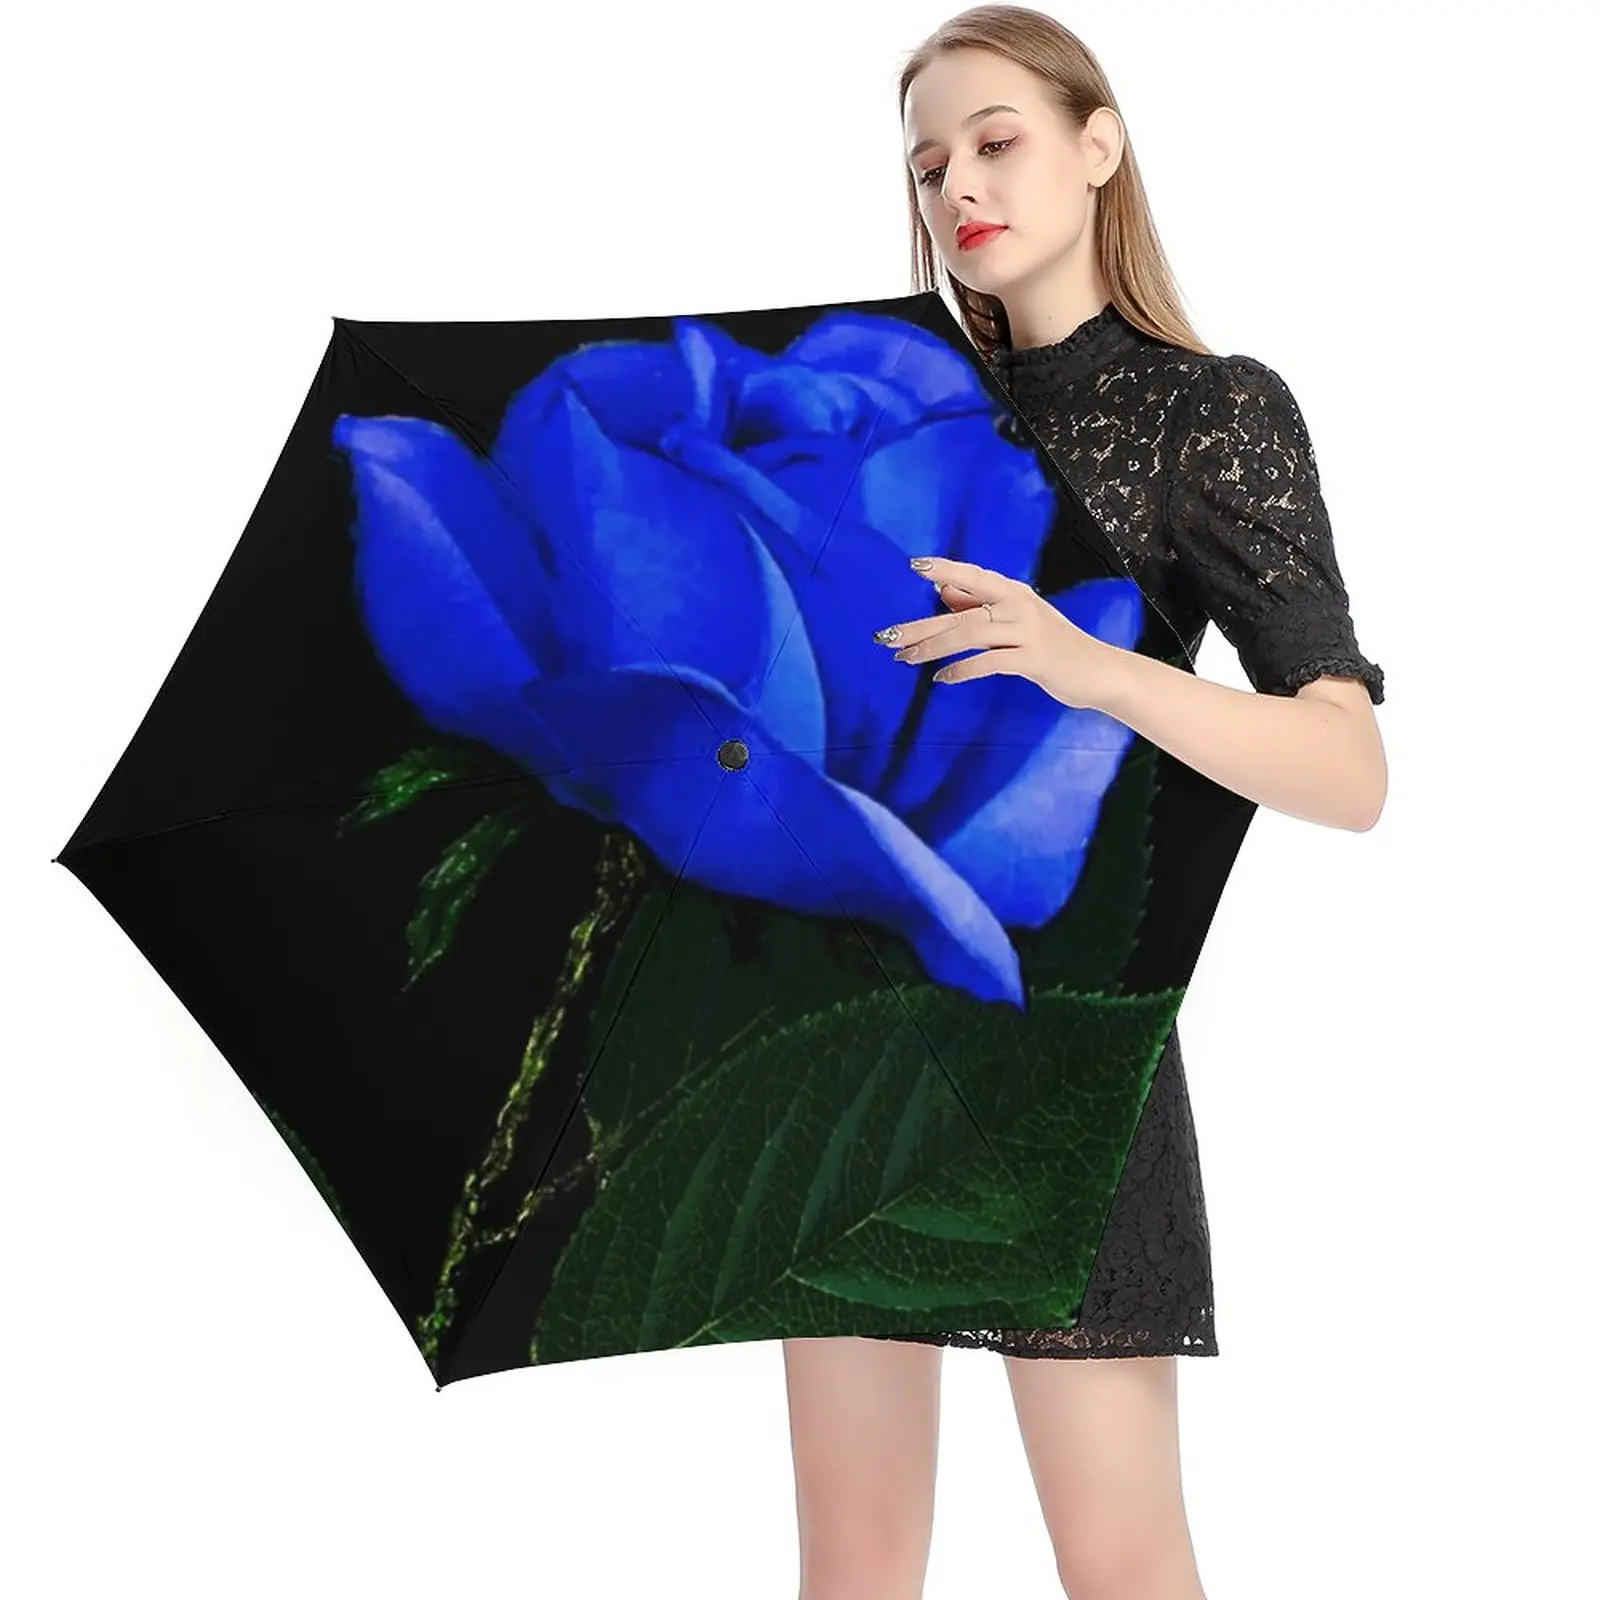 

Зонт ветрозащитный Карманный с принтом синих роз, складной в 5 сложений, 6 ребер, Ретро стиль, для мужчин и женщин